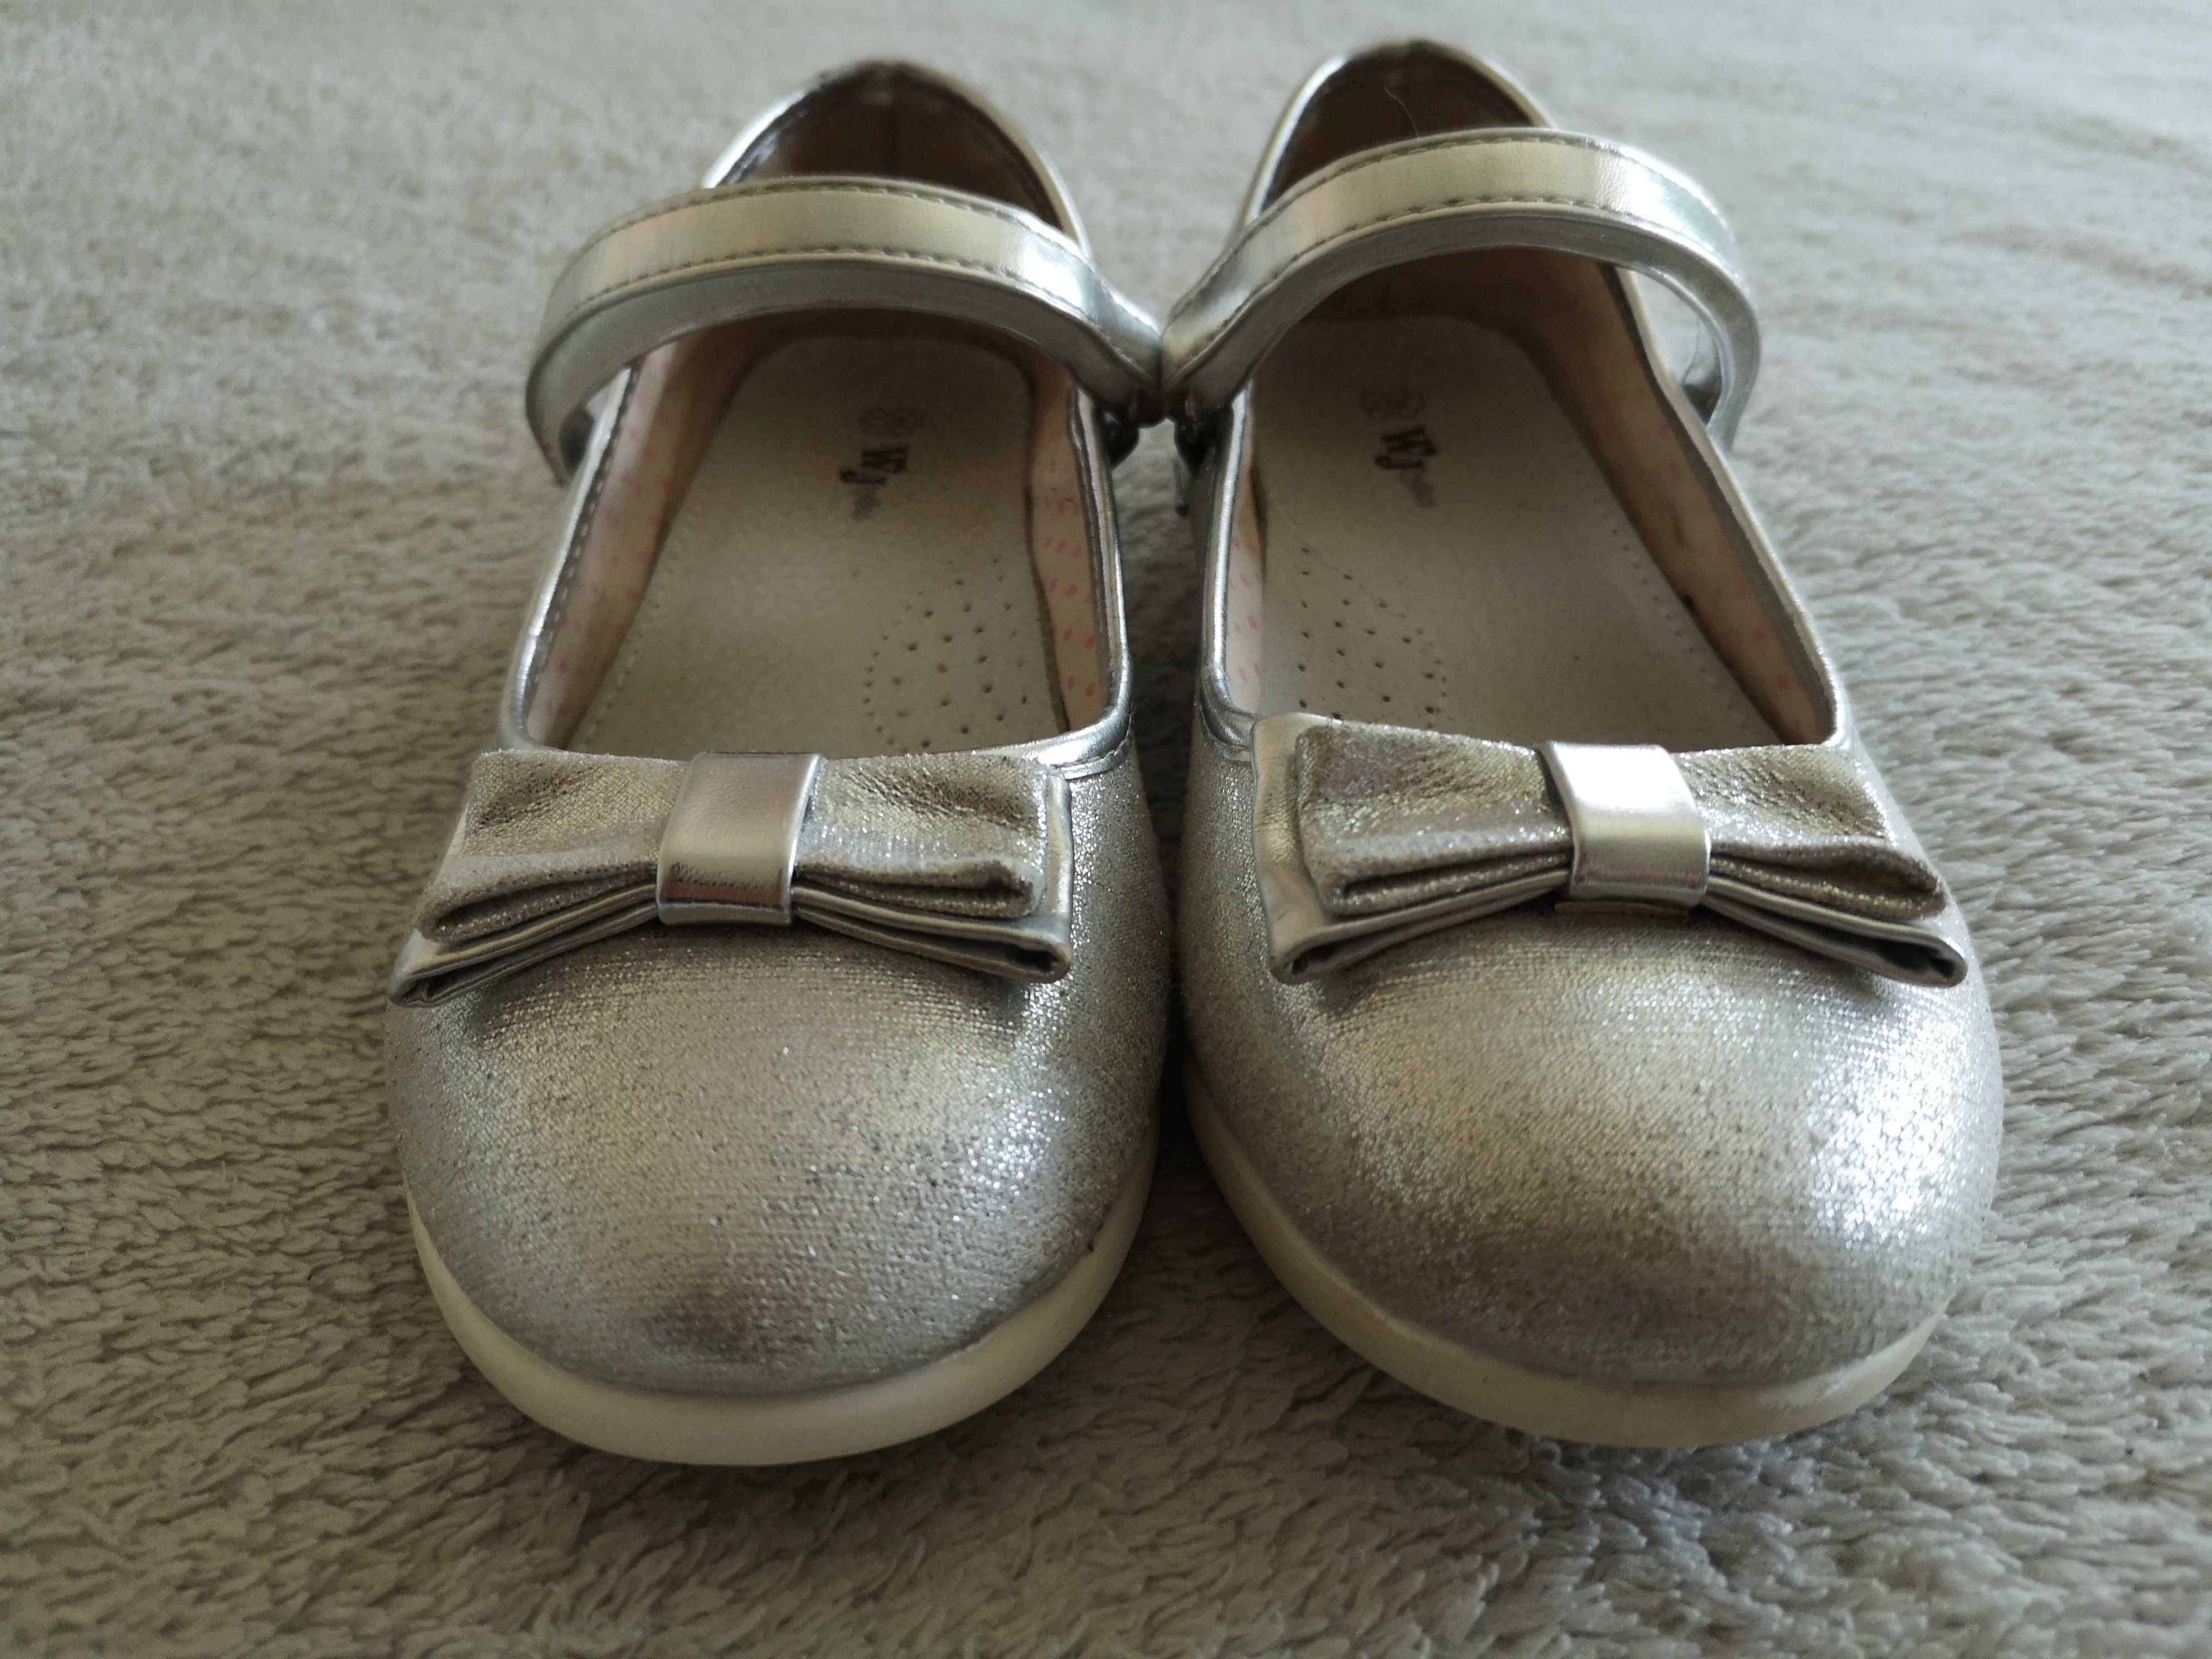 Srebrne eleganckie błyszczące skórzane buty baleriny WoJtylko 34